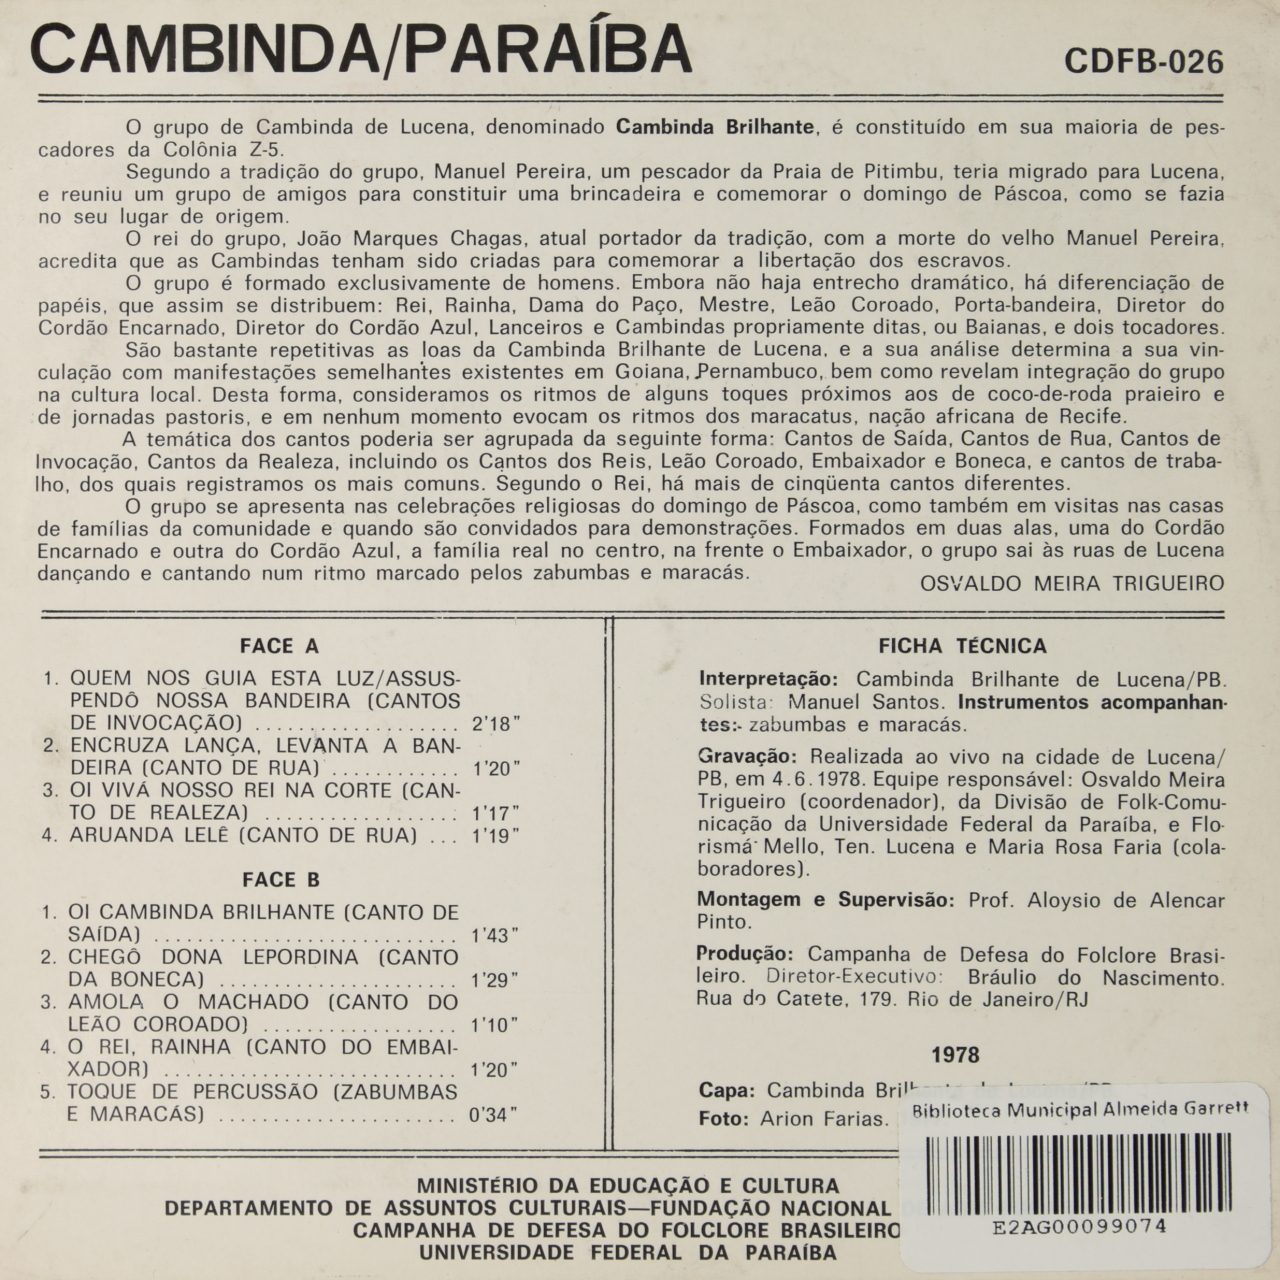 Cambinda/Paraíba